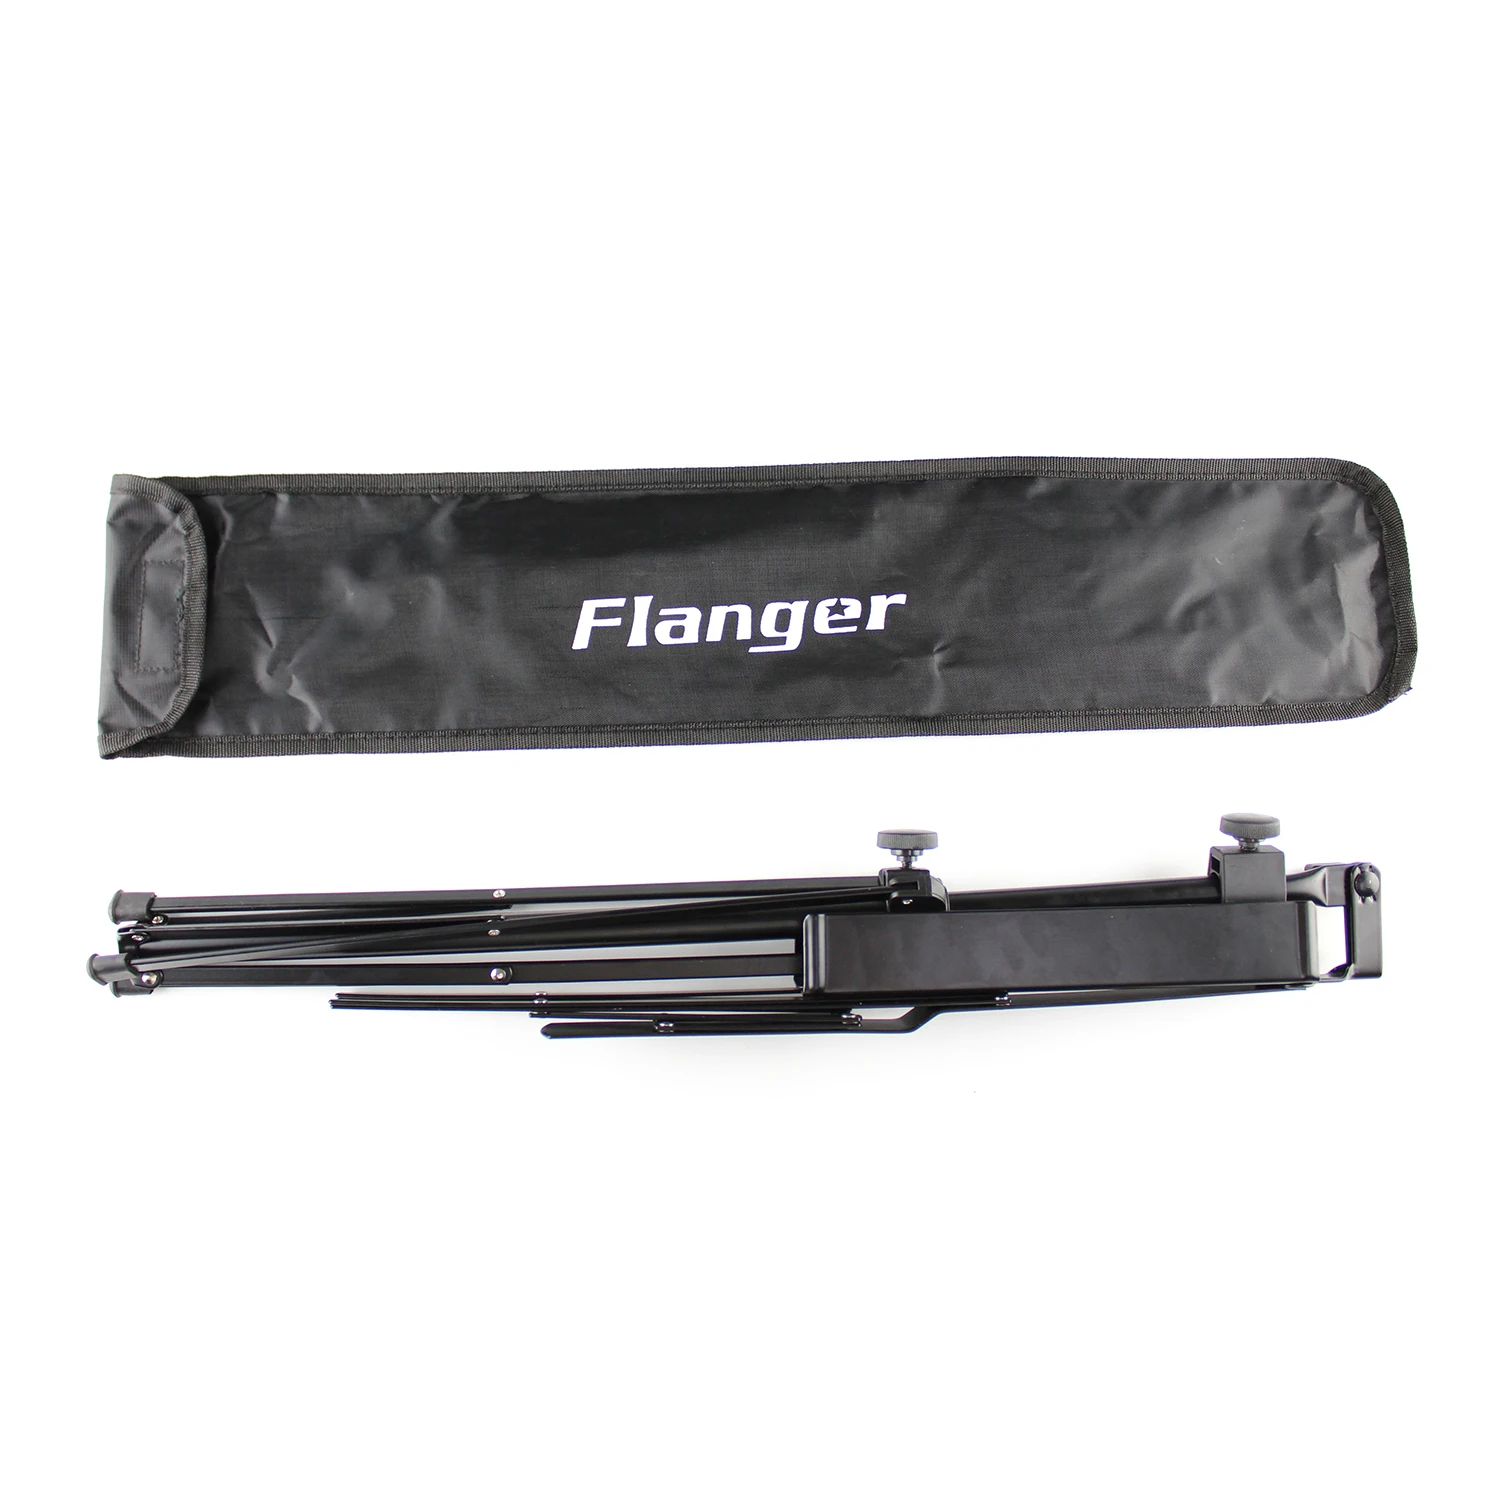 Горячий-Flanger FL-09 складной небольшой музыкальный стенд Штатив для сидения или стоя позиции